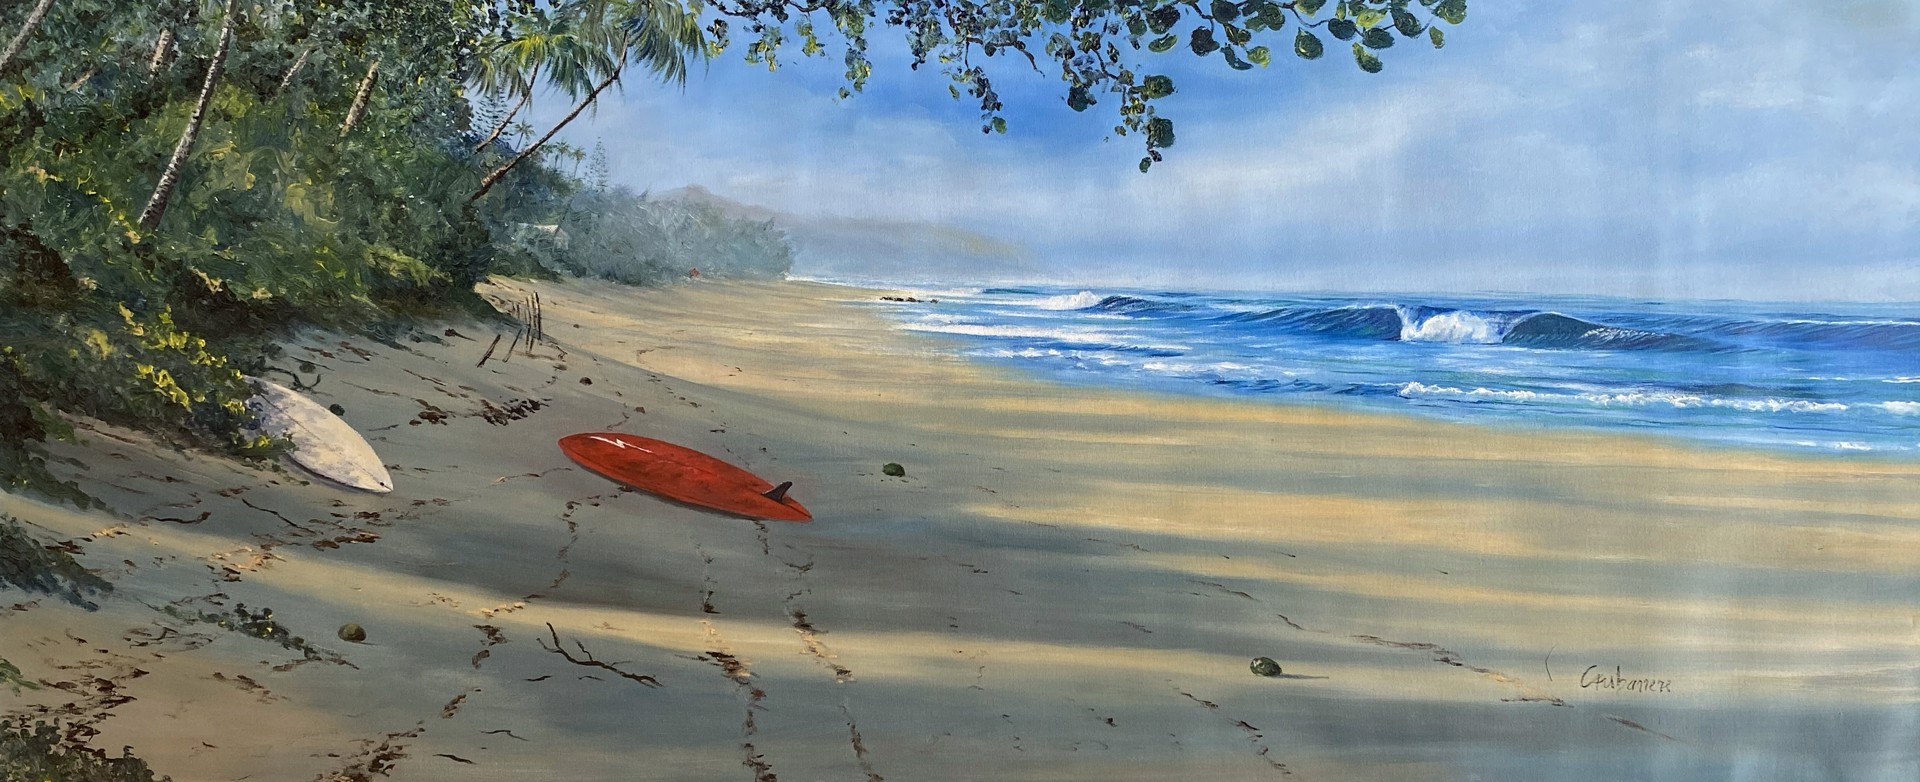 Red Board ʻEhukai Beach by Nicolas Caubarrere